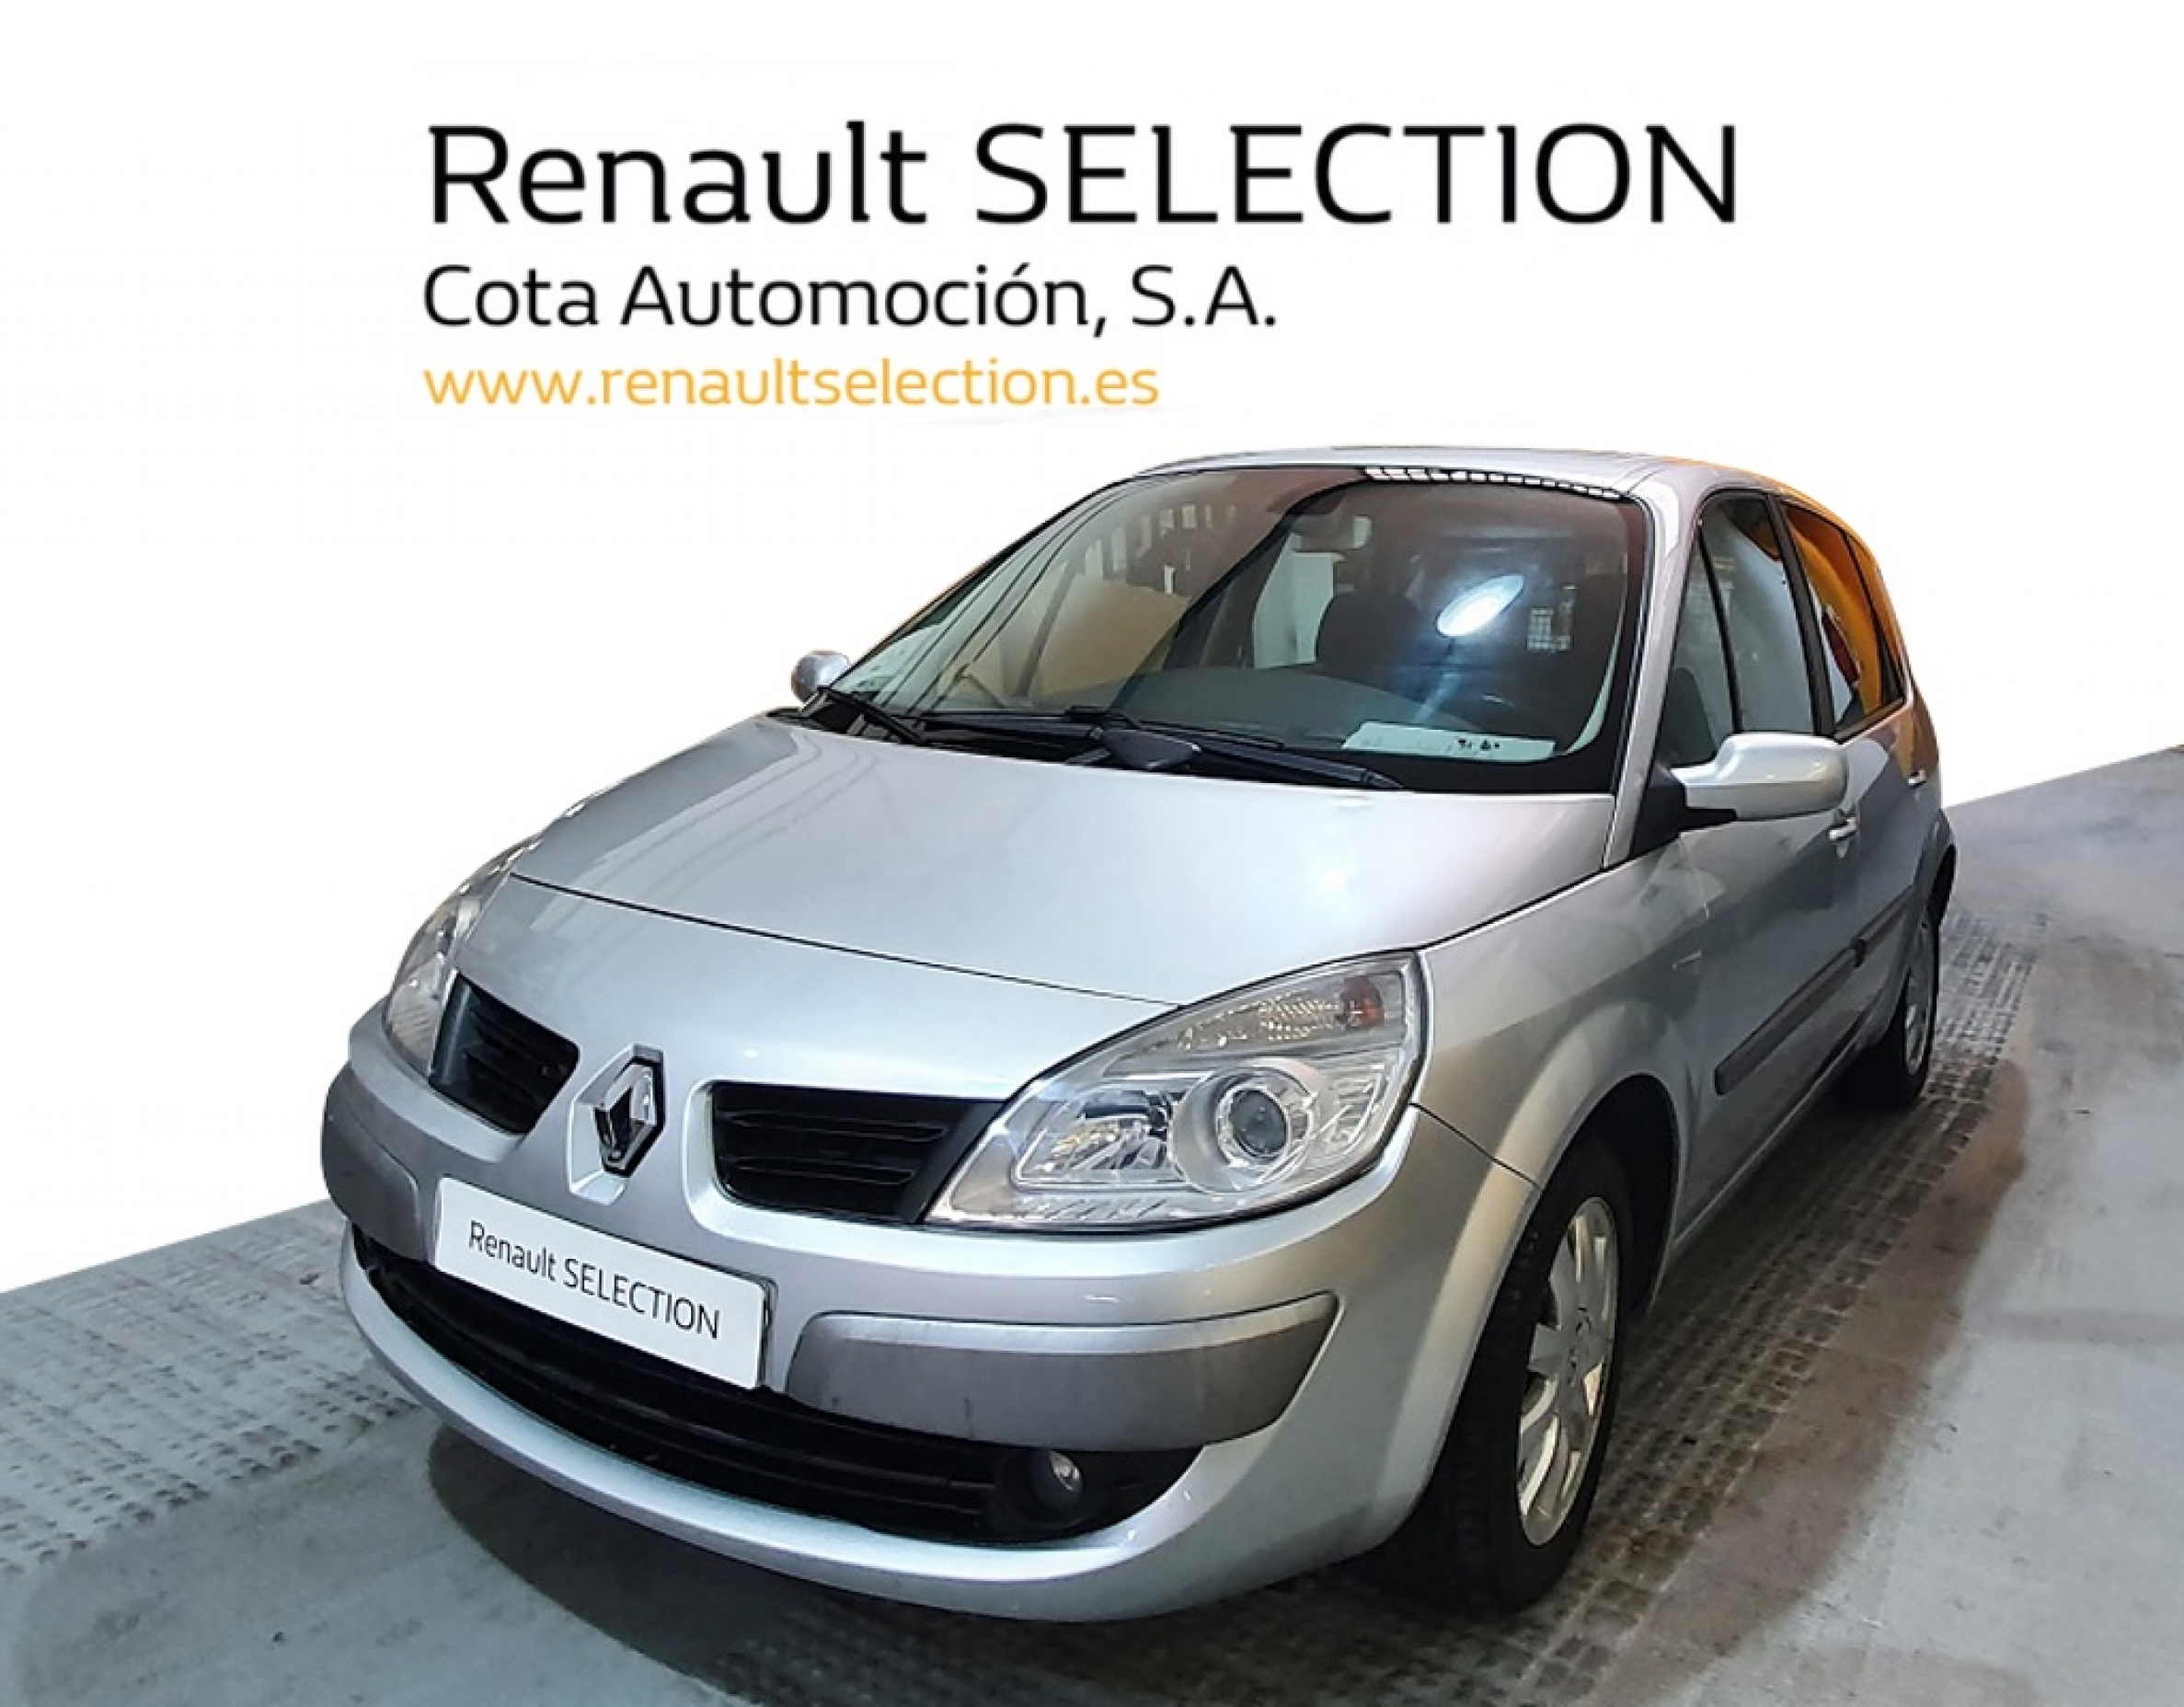 Renault Scenic 3.800€ - Segunda mano y ocasión